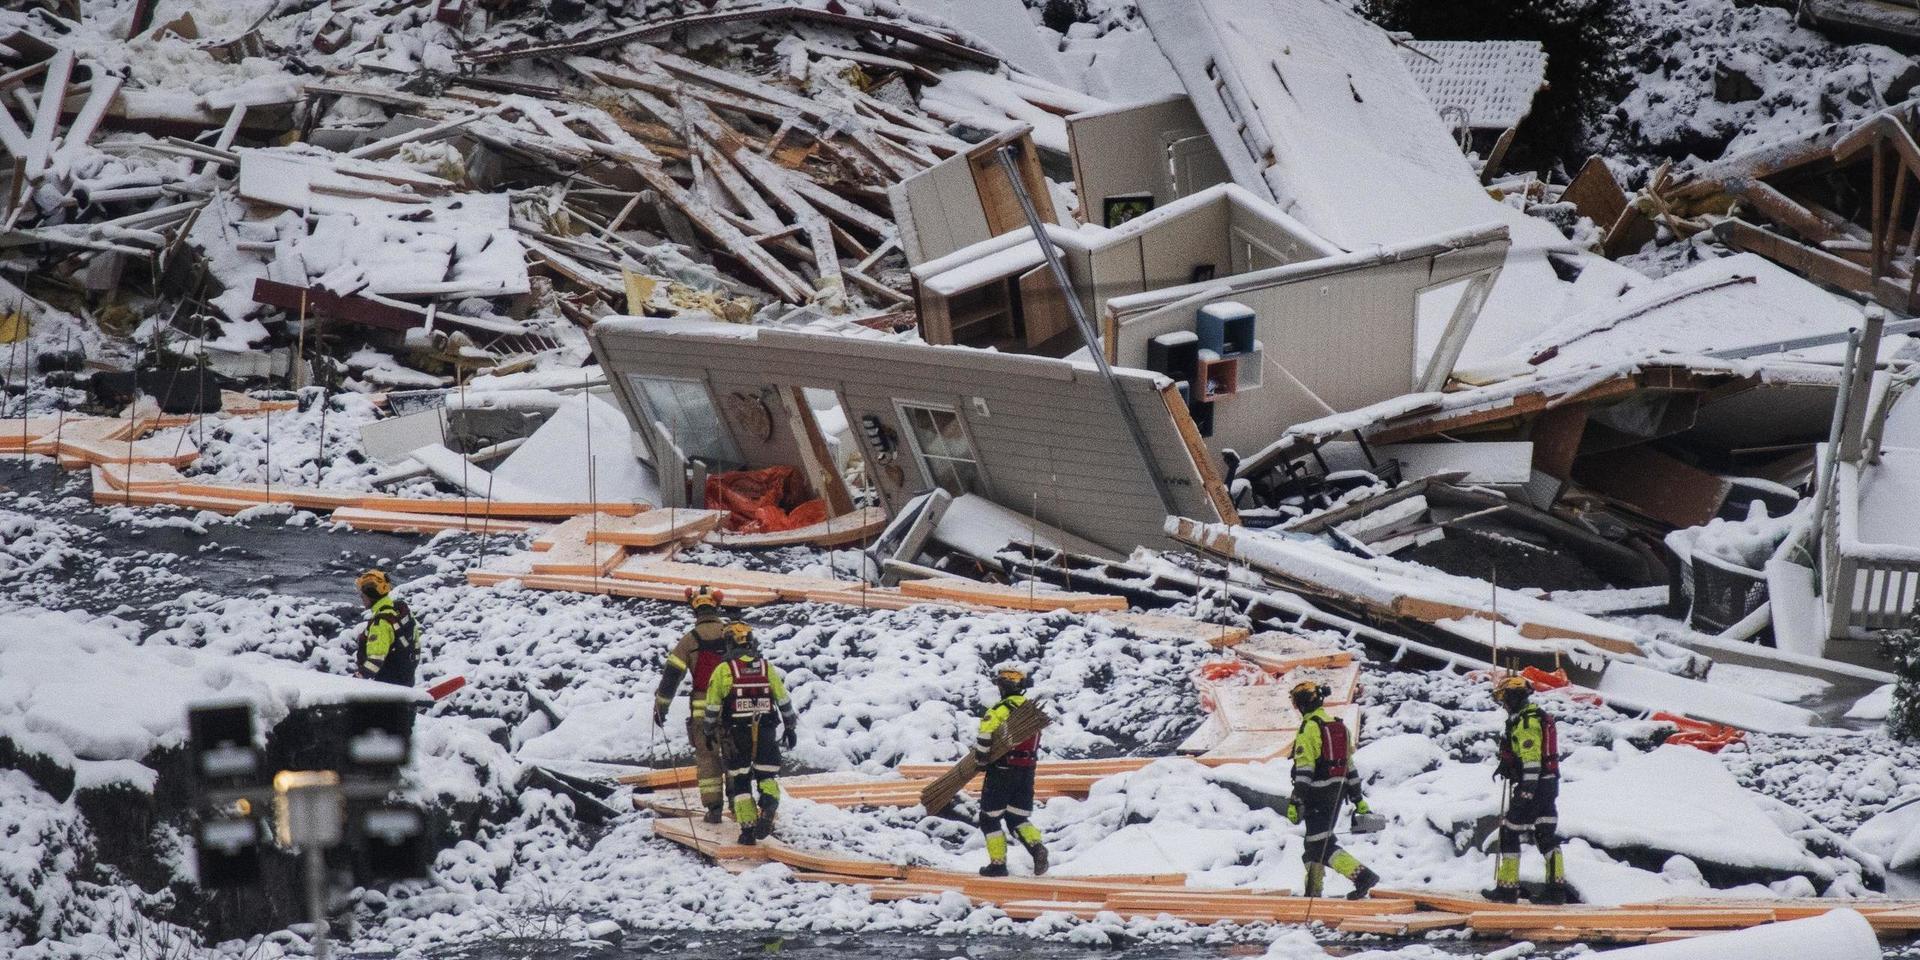 Räddningspersonalen har konstruerat vägar som de kan gå på. Räddningsarbetet pågår för fullt efter jordskredet i norska Gjerdrum.